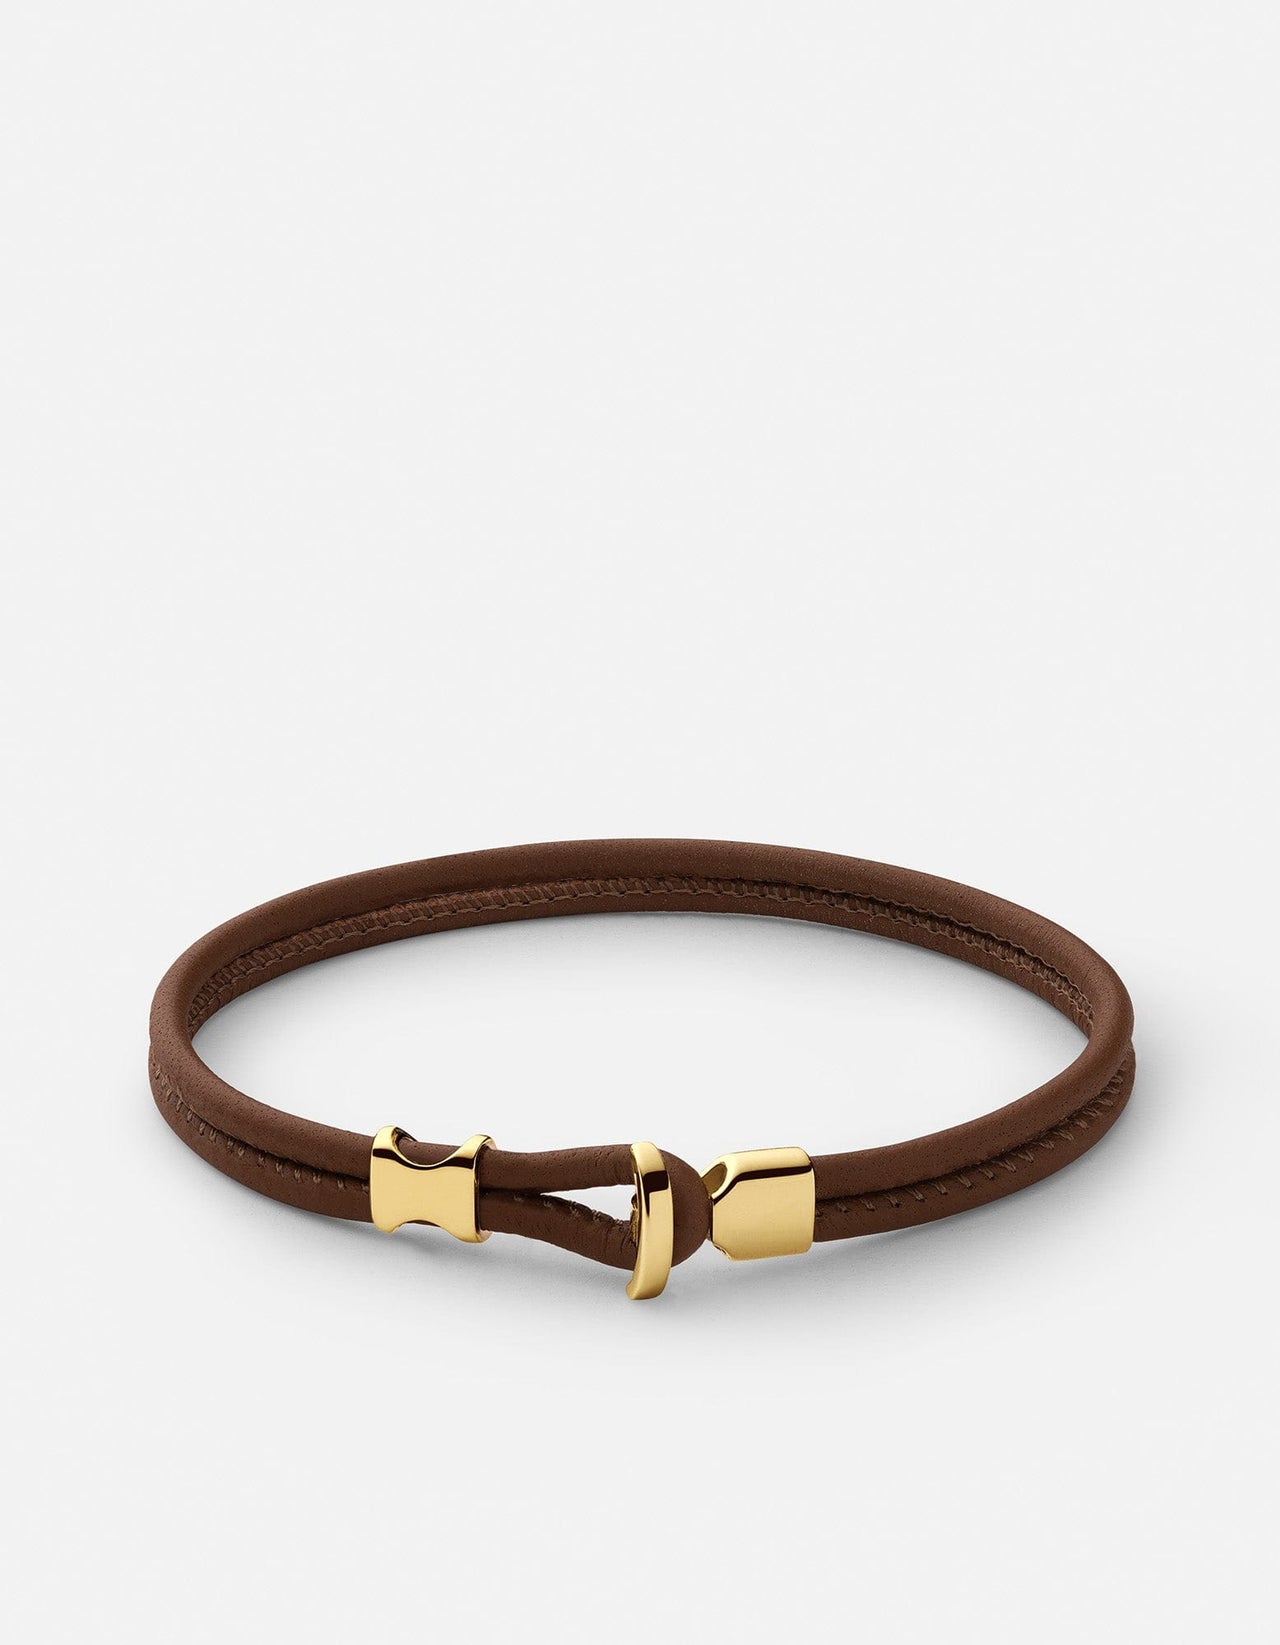 Miansai Men's Orson Loop Leather Bracelet, Gold Vermeil, Size L